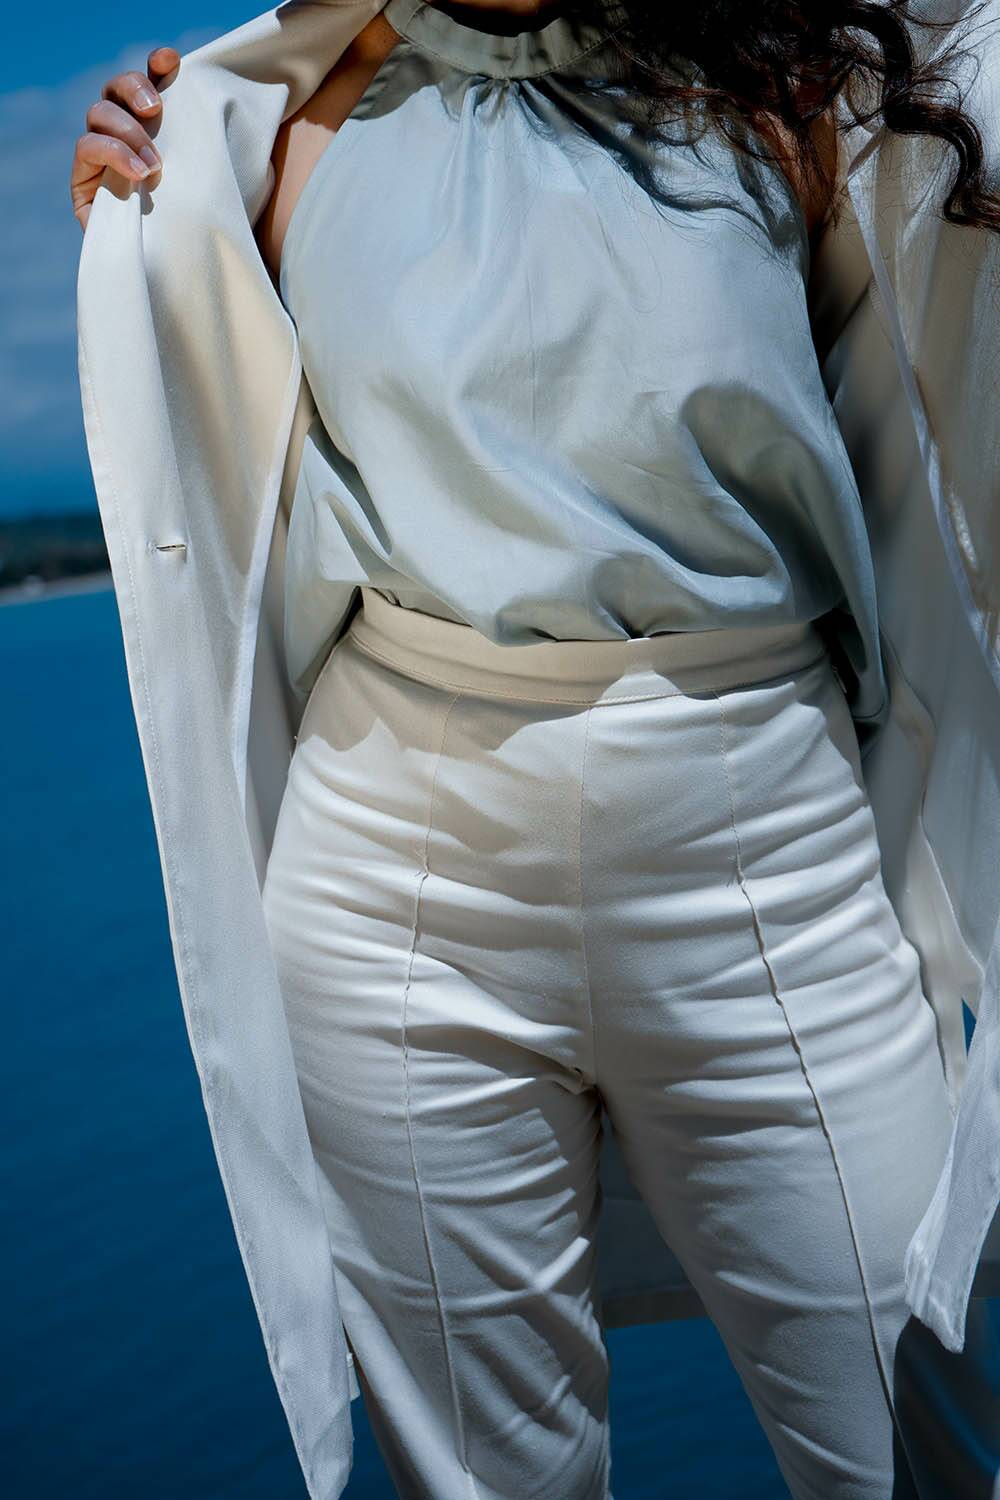 Pantalone in bamboo ecologico linea dritta moda sostenibile etica artigianale brand malia lab abbigliamento ecosostenibile donna fibra naturali pantalone sartoriale dettaglio cinta